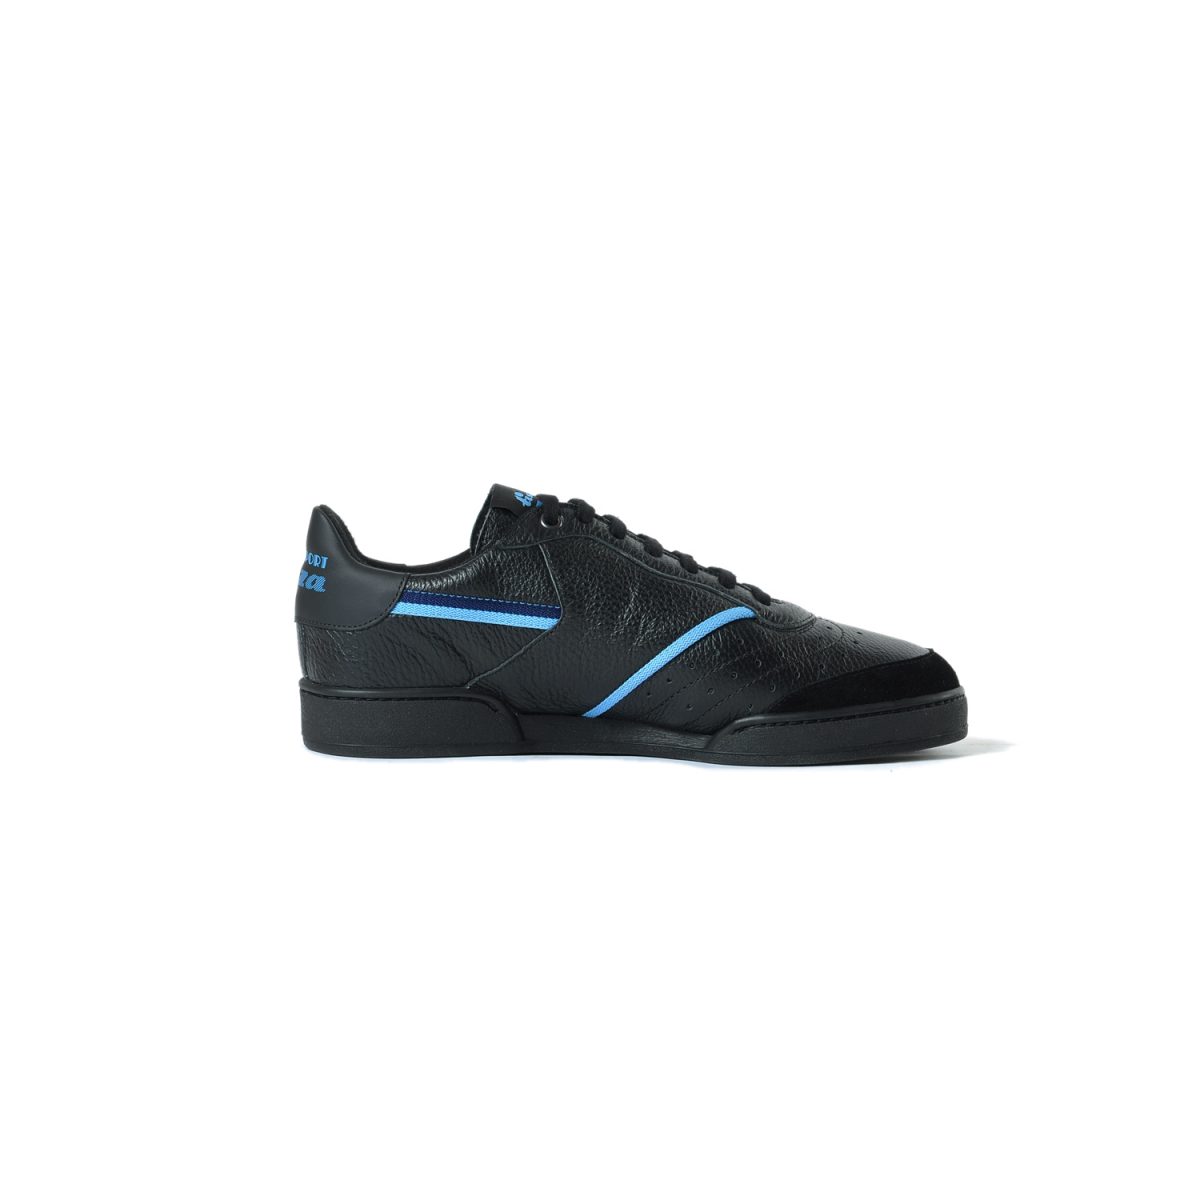 Tisza shoes - Sport - Black-blue